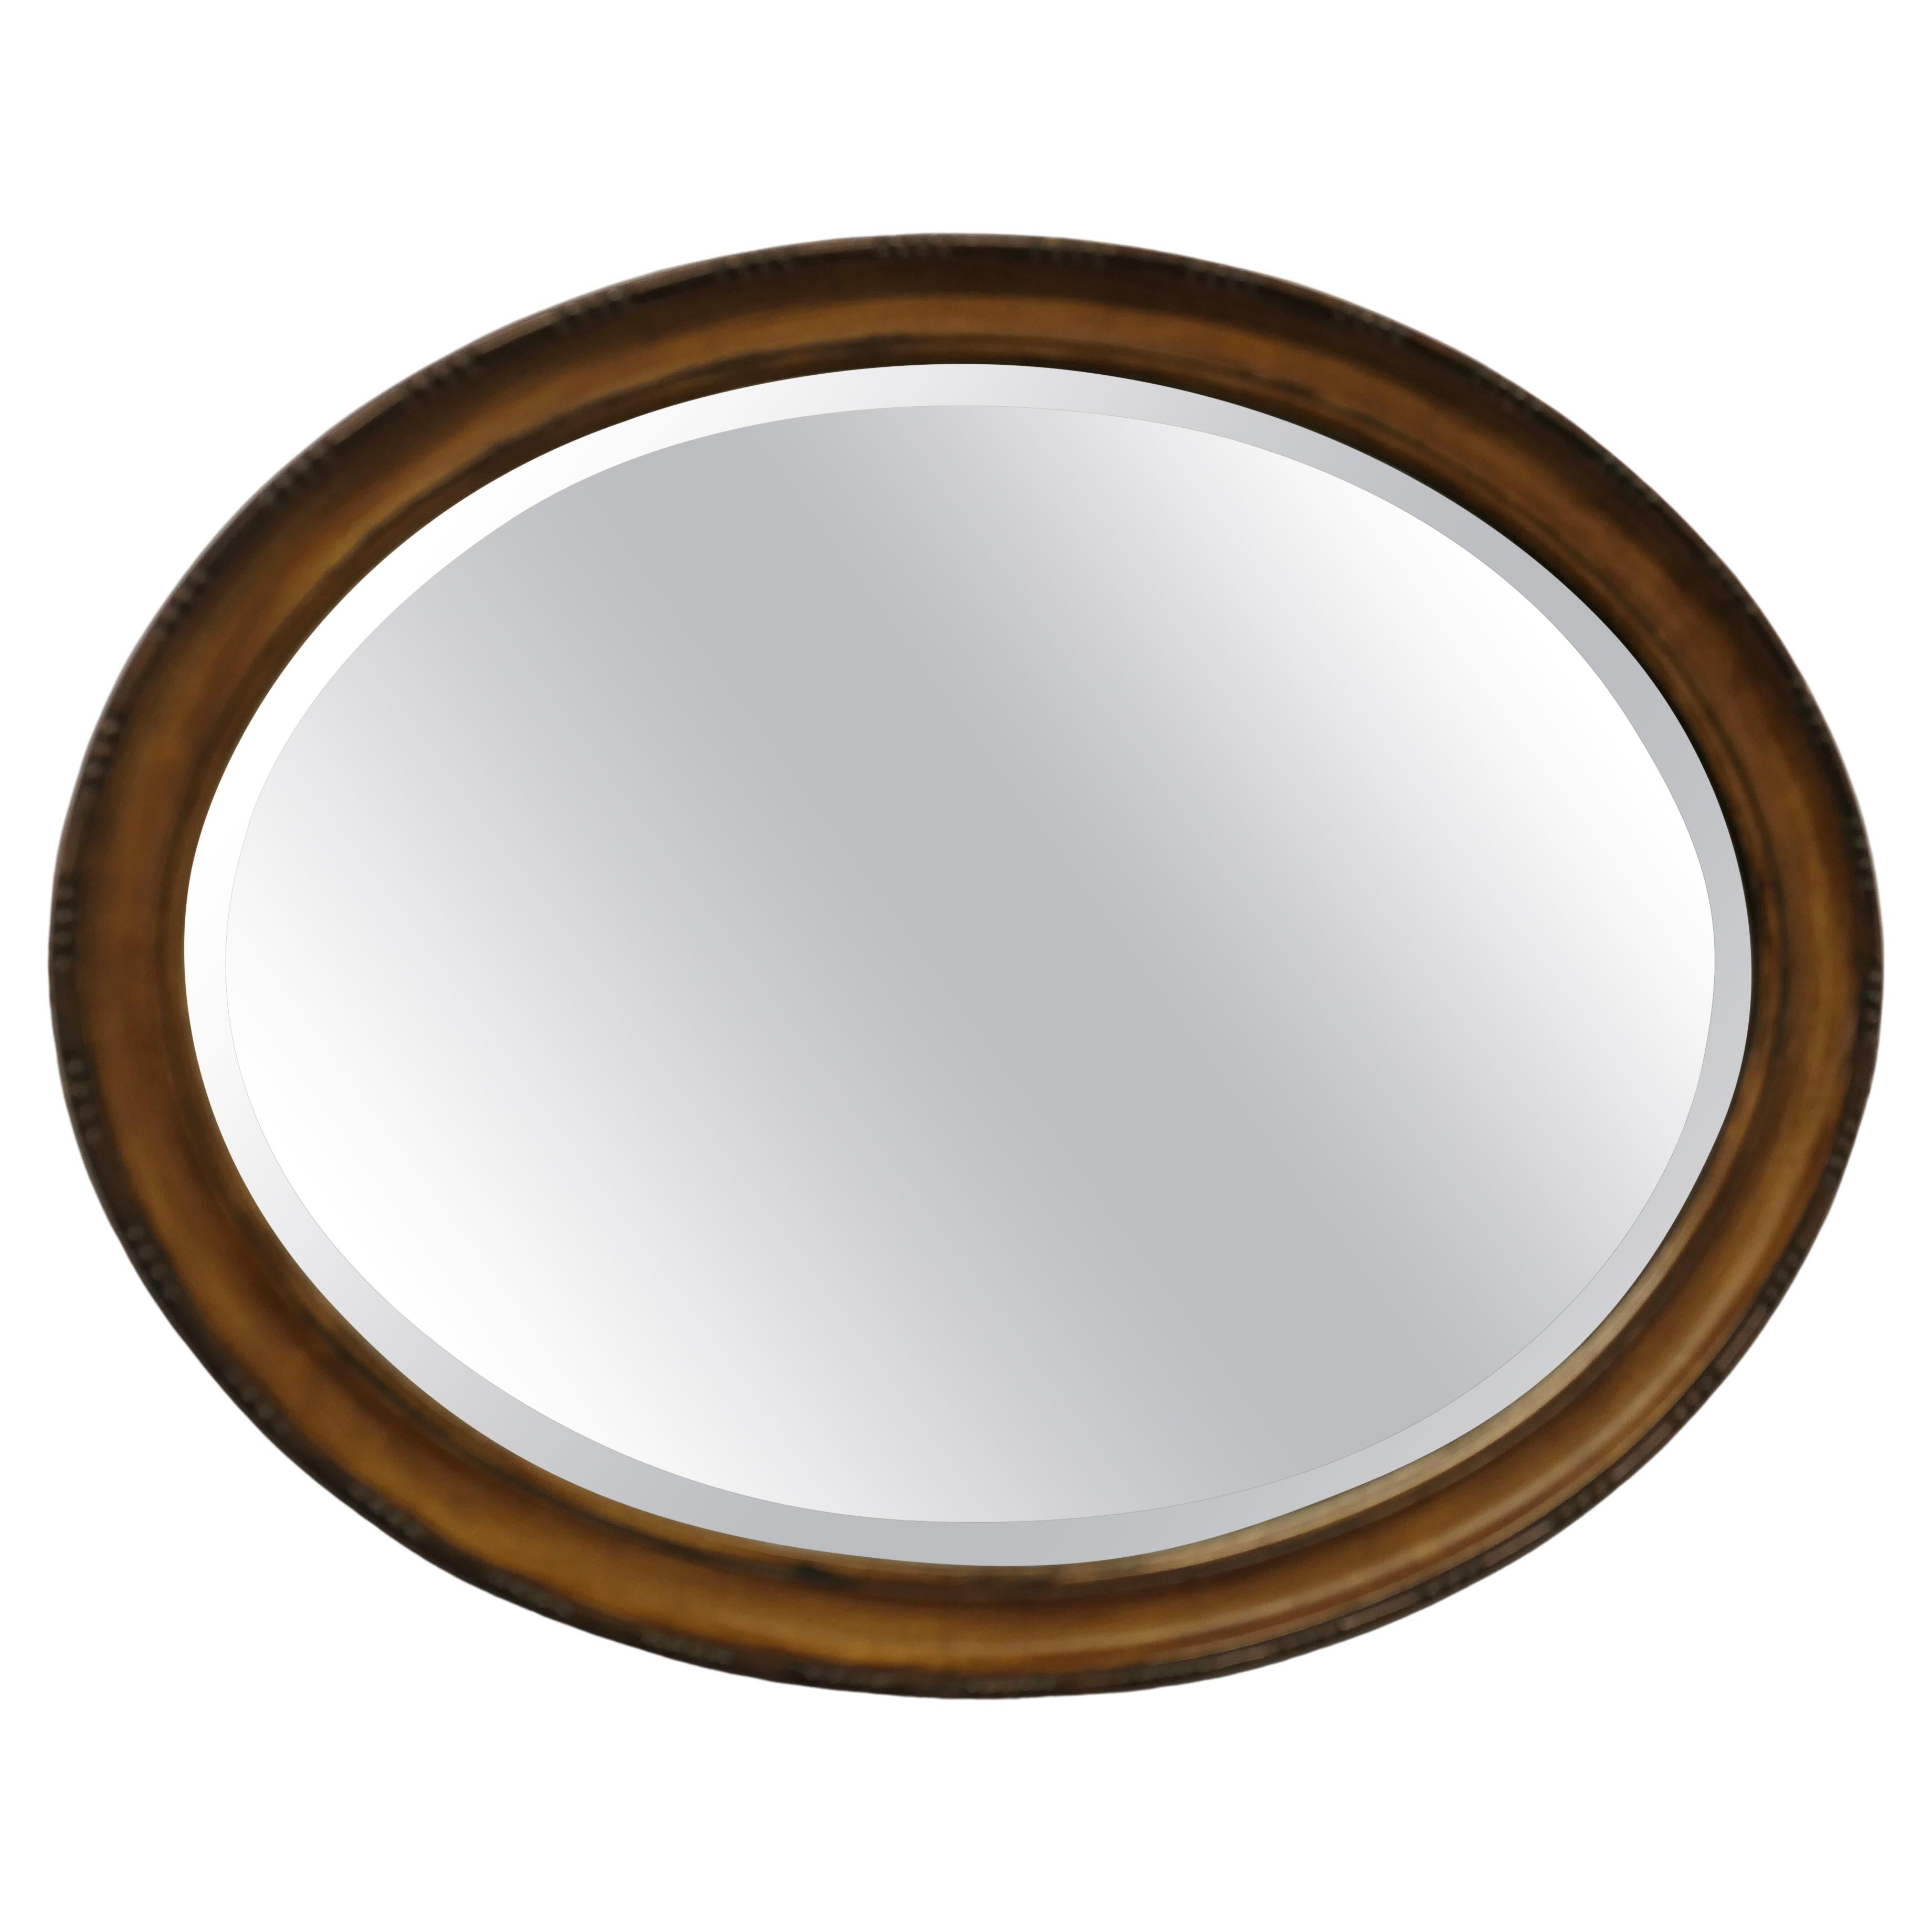 Scumble Finish Oval Mirror Dieser Spiegel hat einen geformten ovalen Rahmen